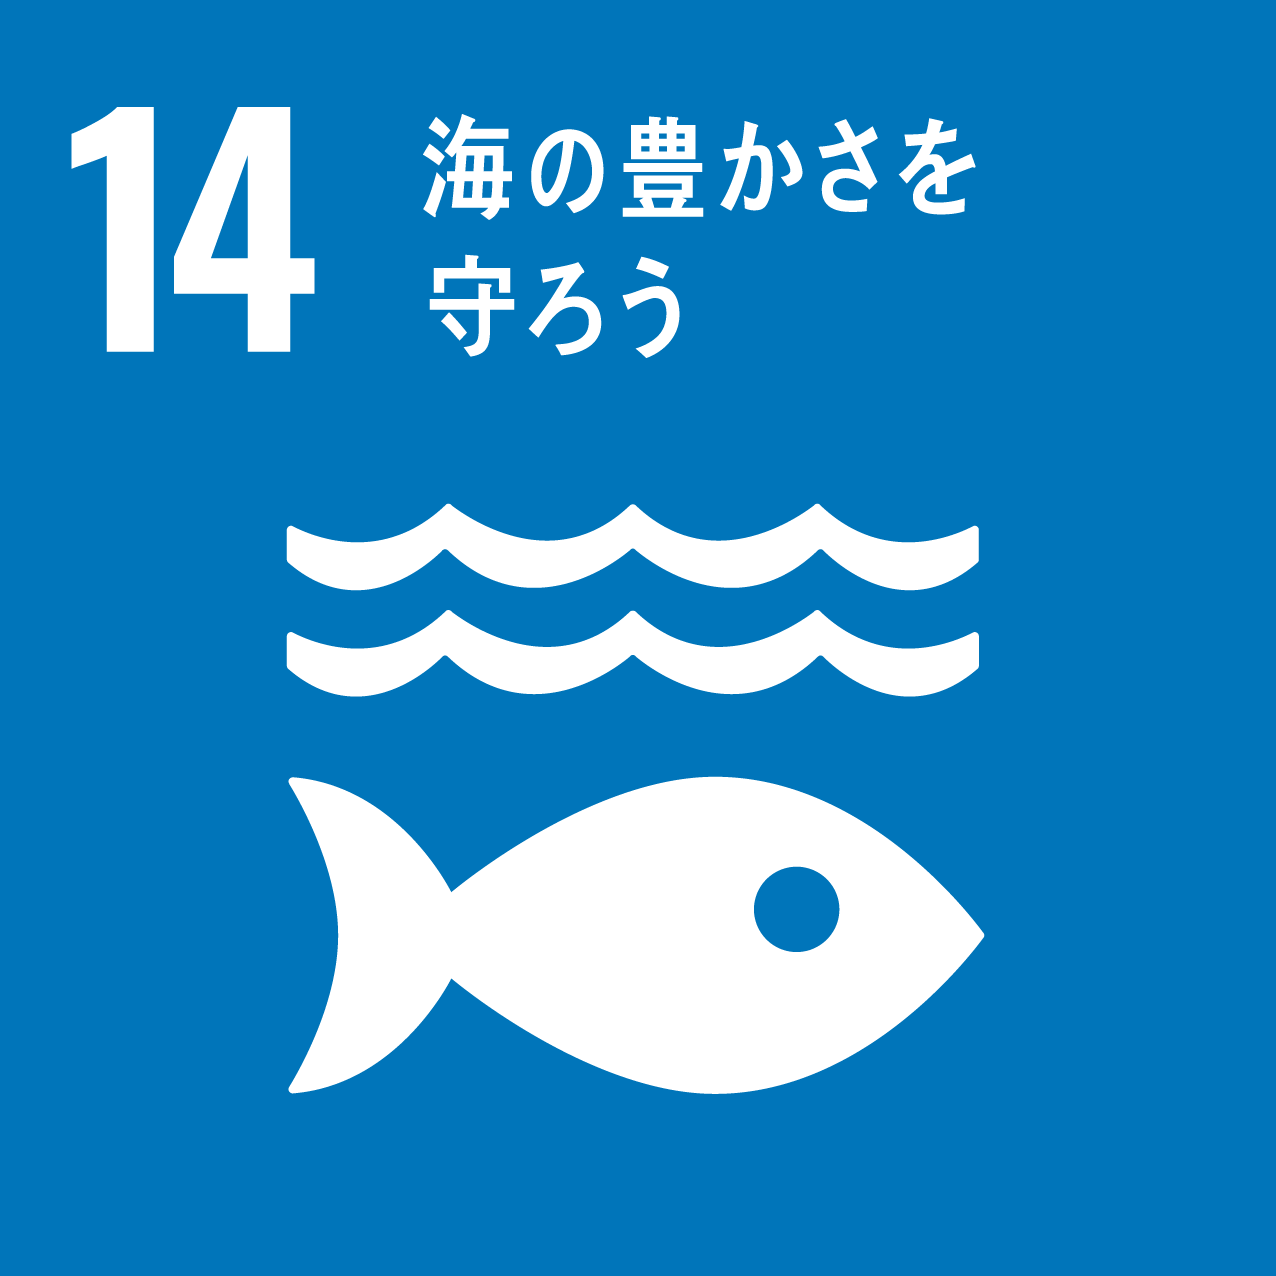 SDGs_目標14「海の豊かさを守ろう」アイコン